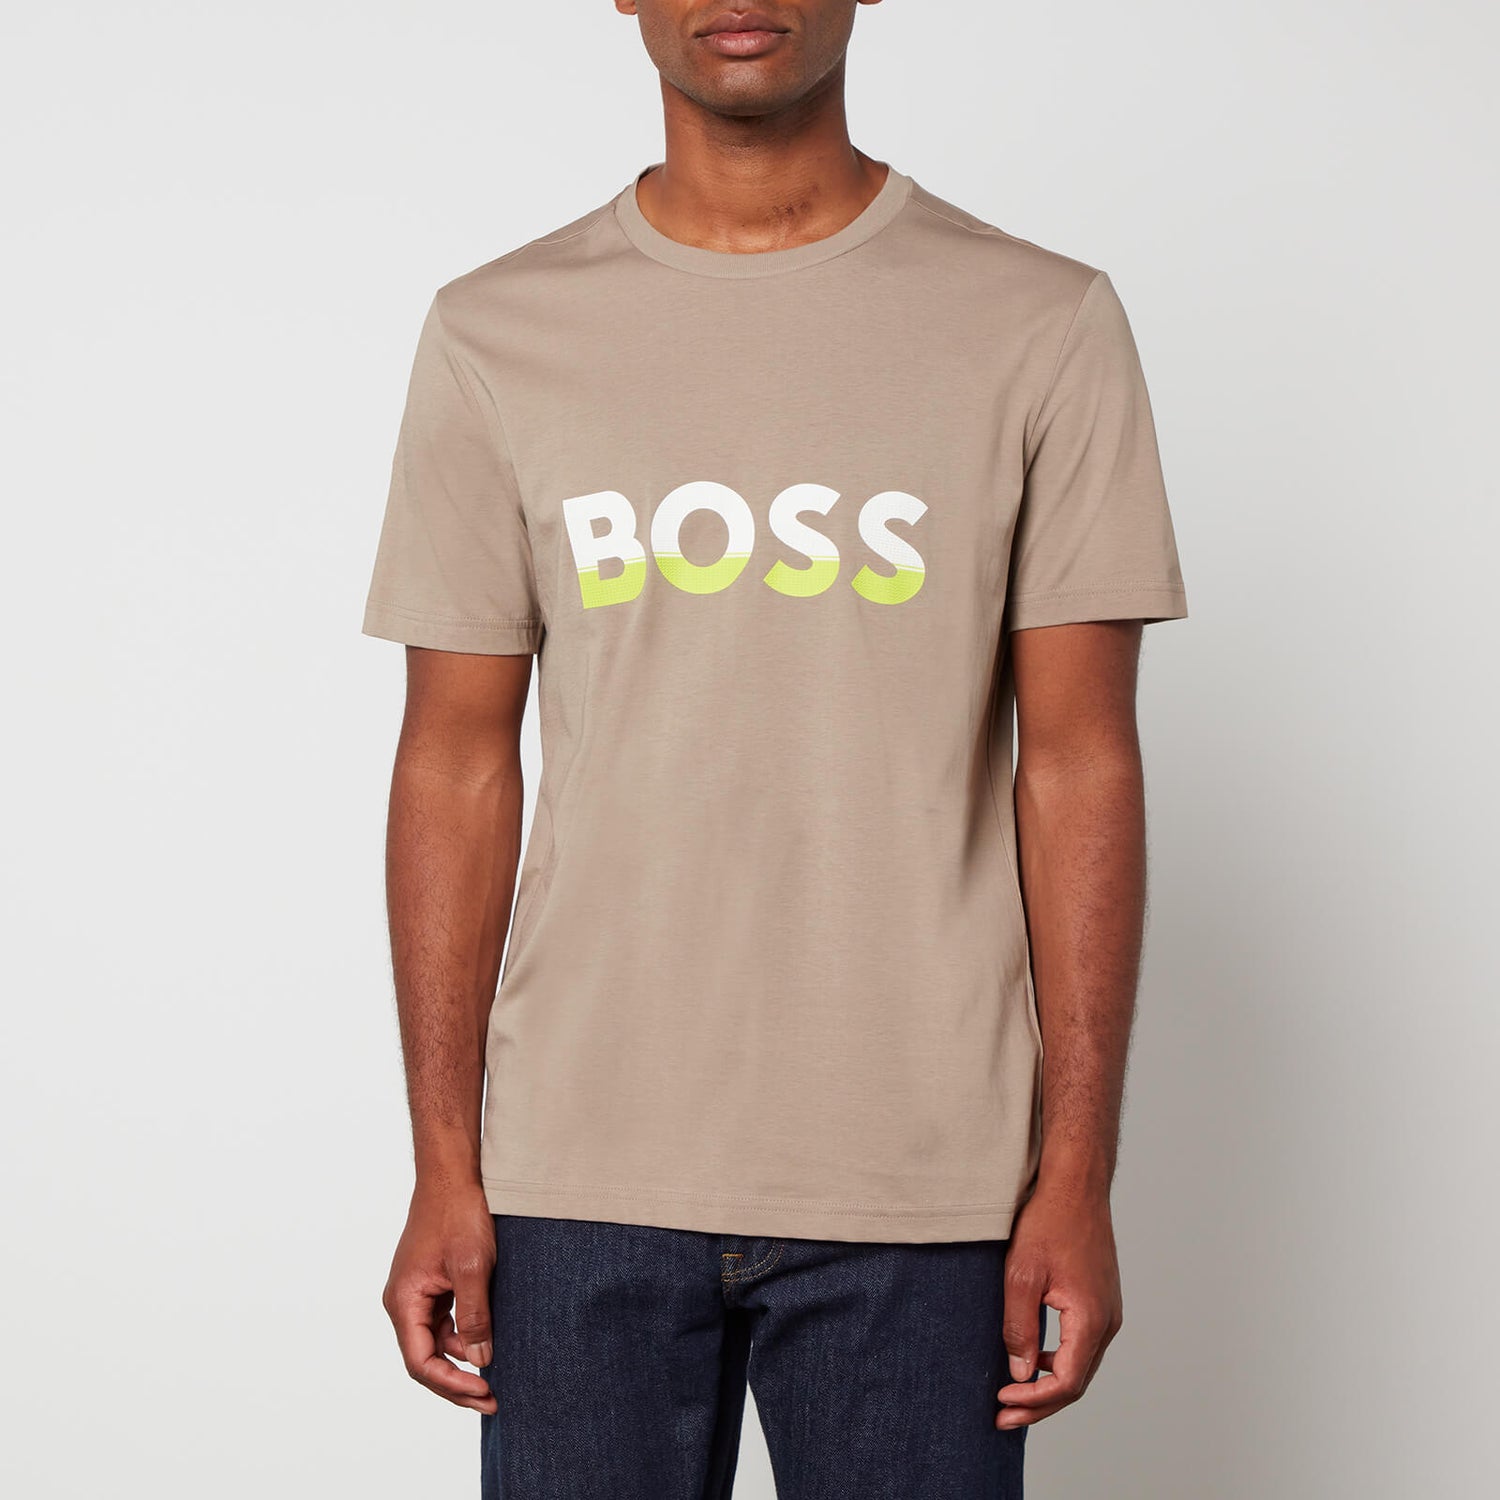 Boss Green Tee 1 Cotton-Jersey T-Shirt - XL